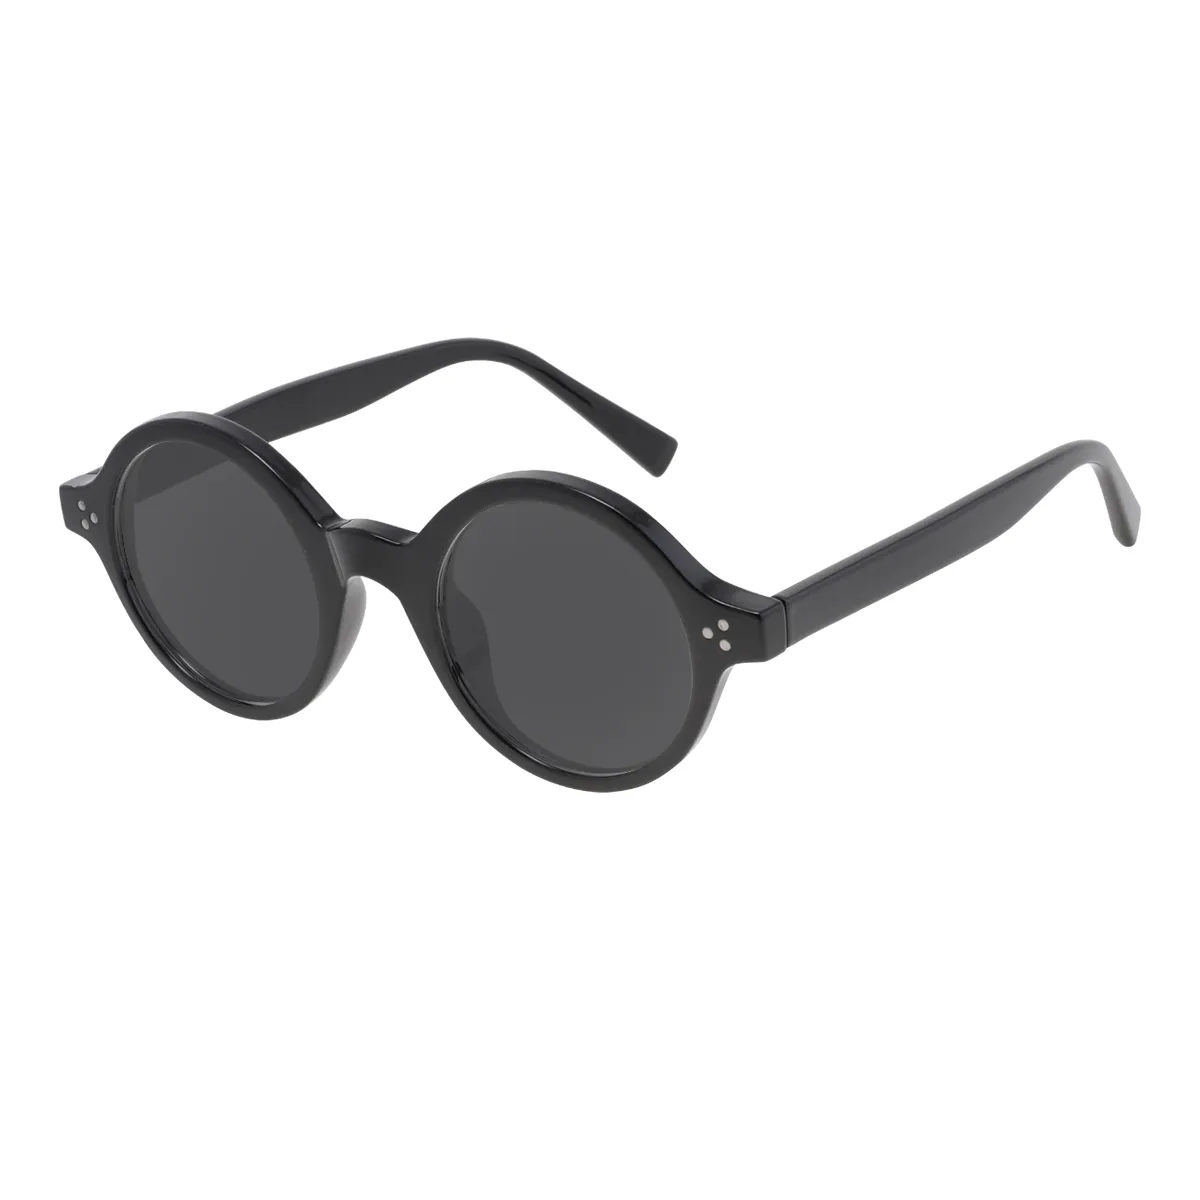 Singleton - Round Black Sunglasses for Men & Women